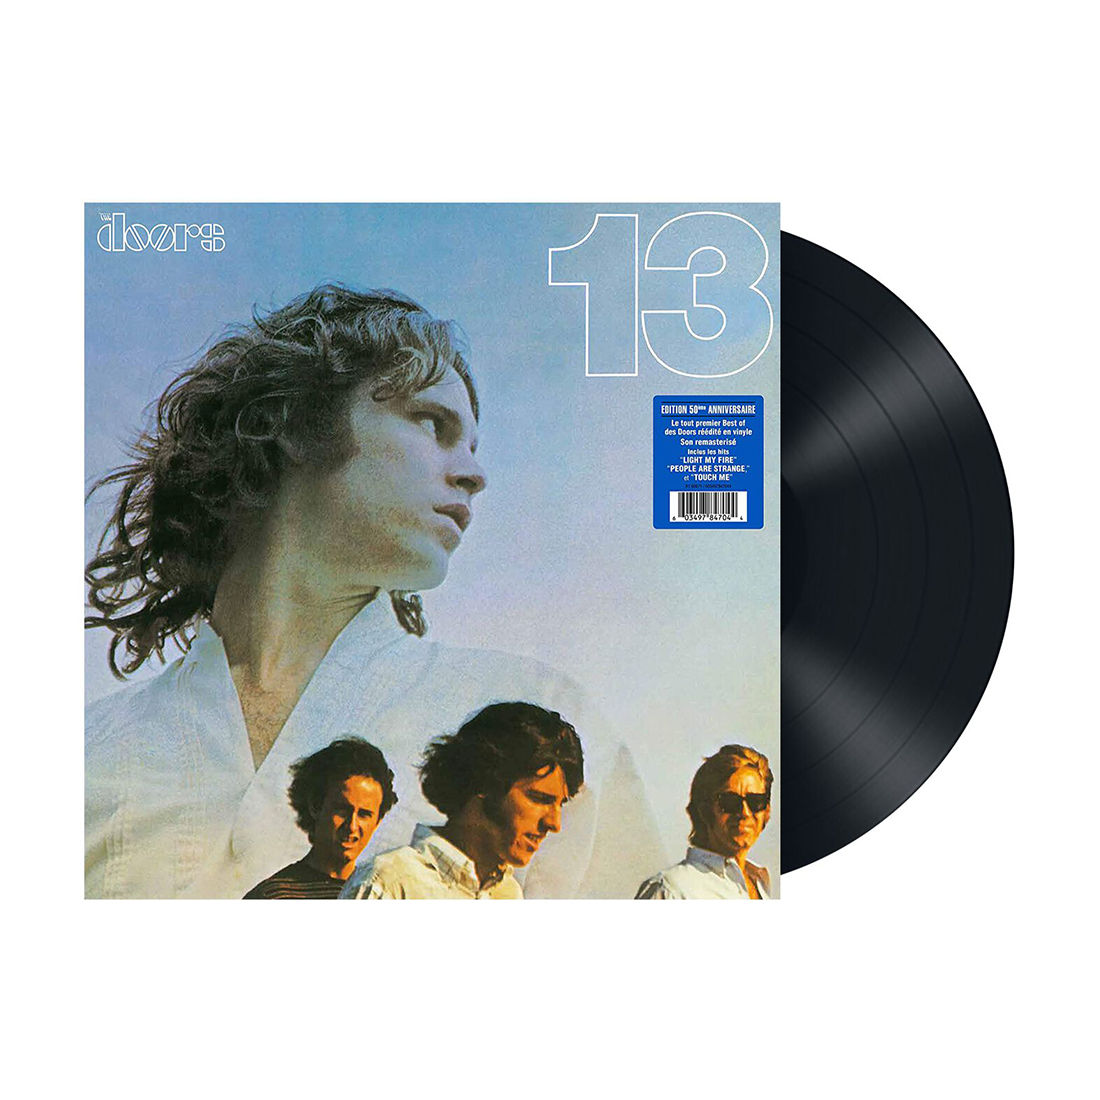 The Doors - 13: Vinyl LP